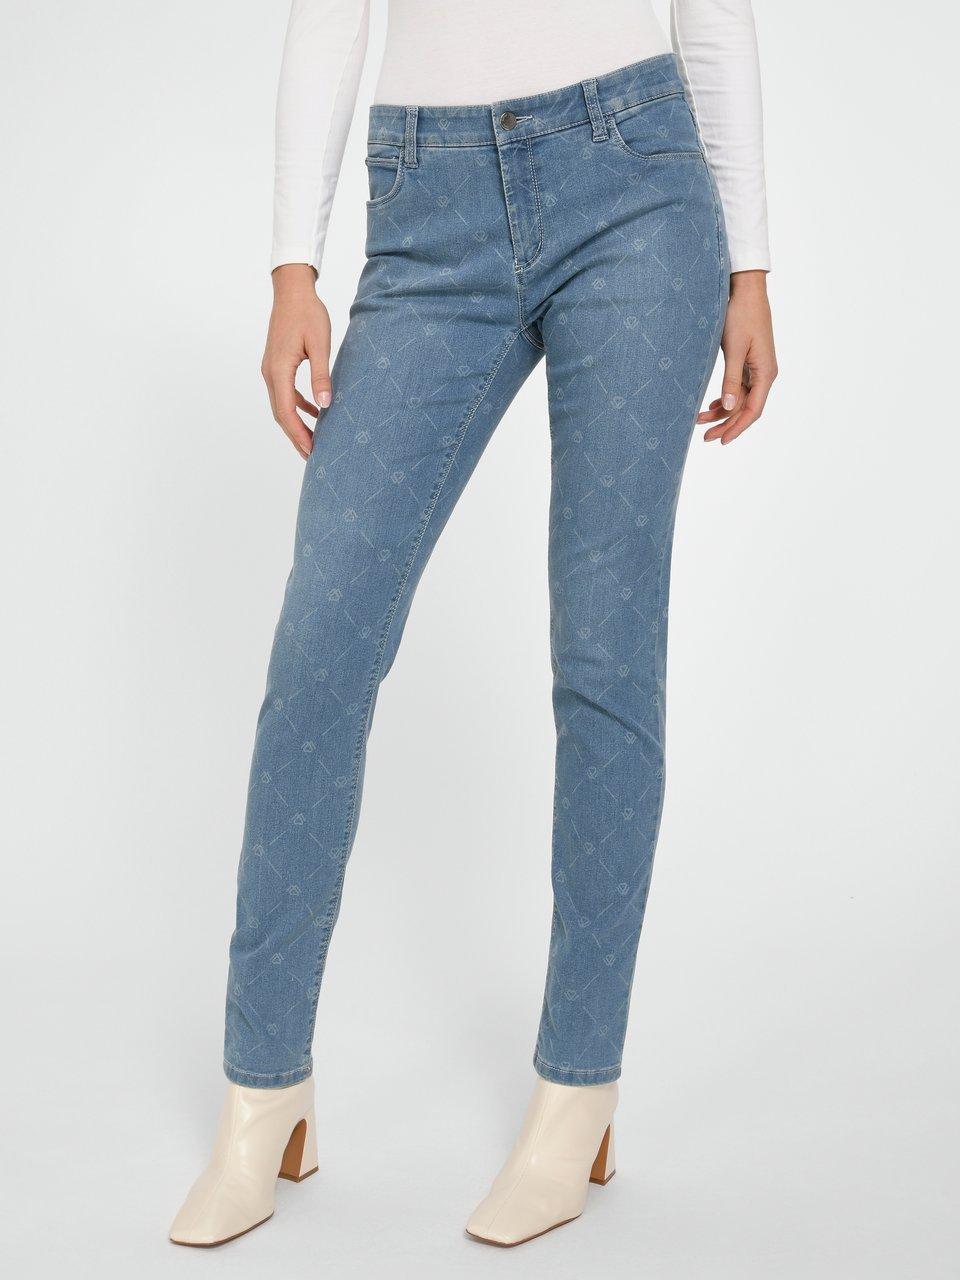 WONDERJEANS - Skinny jeans in 5-pocketsmodel